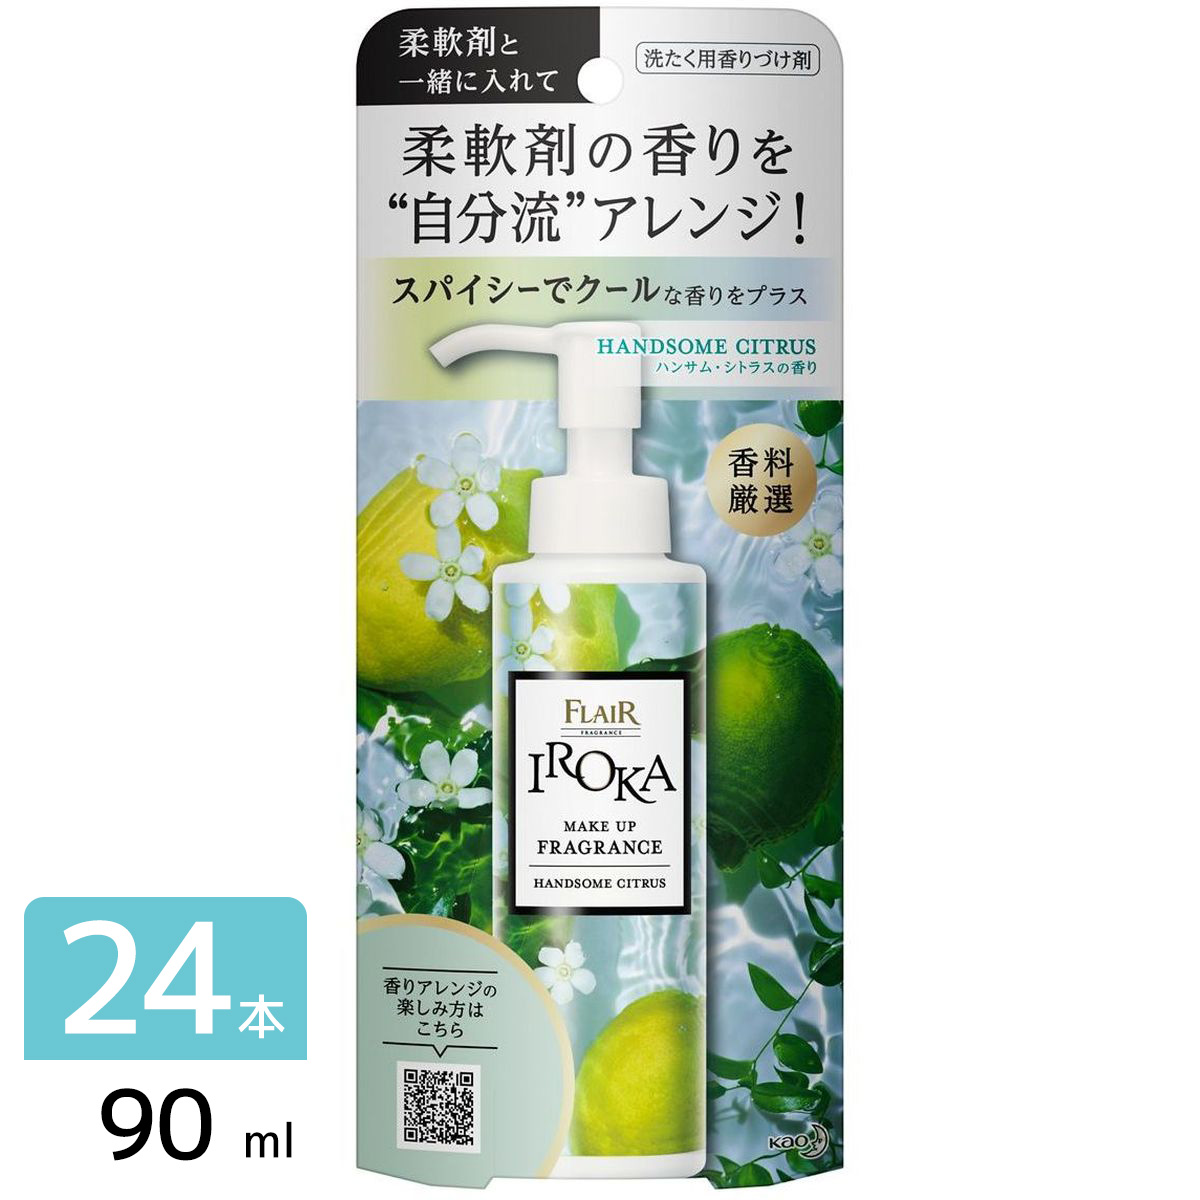 IROKA メイクアップフレグランス 洗たく用香りづけ剤 ハンサムシトラス 本体 90ml×24本